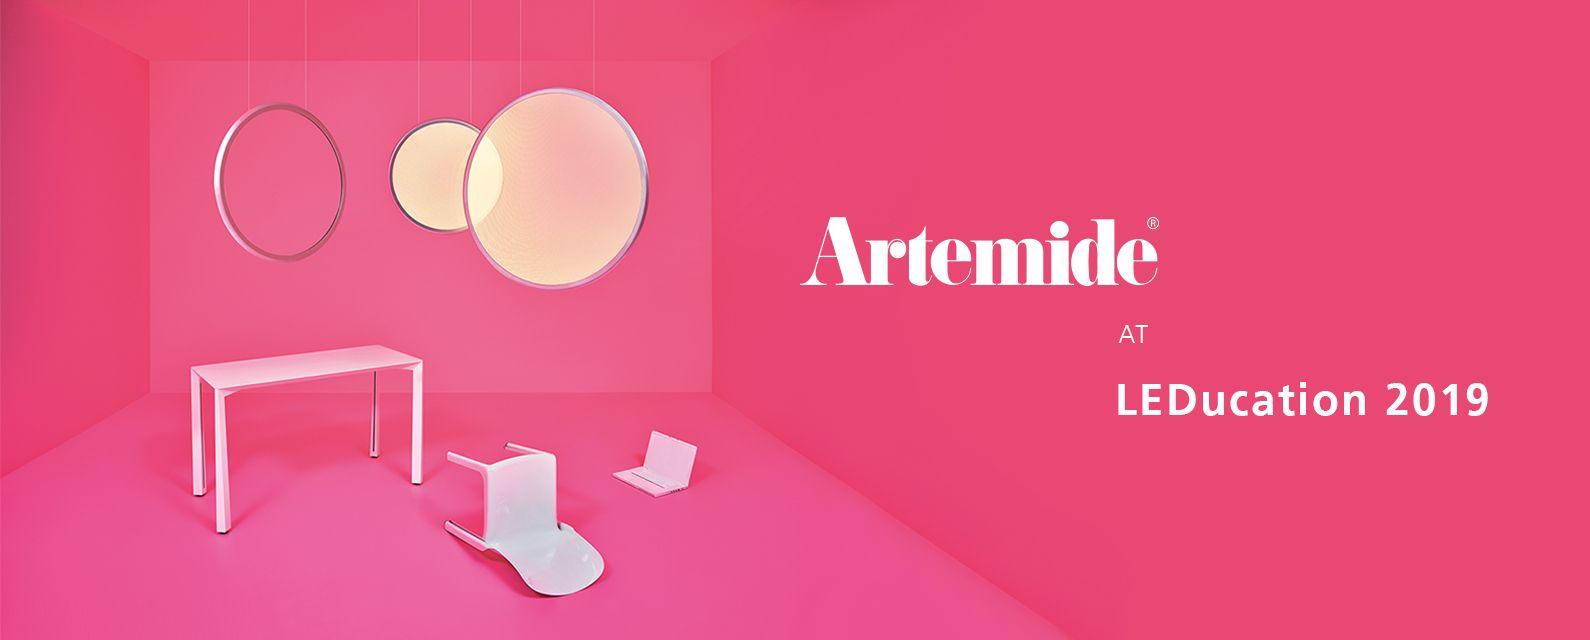 Artemide Logo - Visit Artemide at LEDucation 2019. Artemide North America